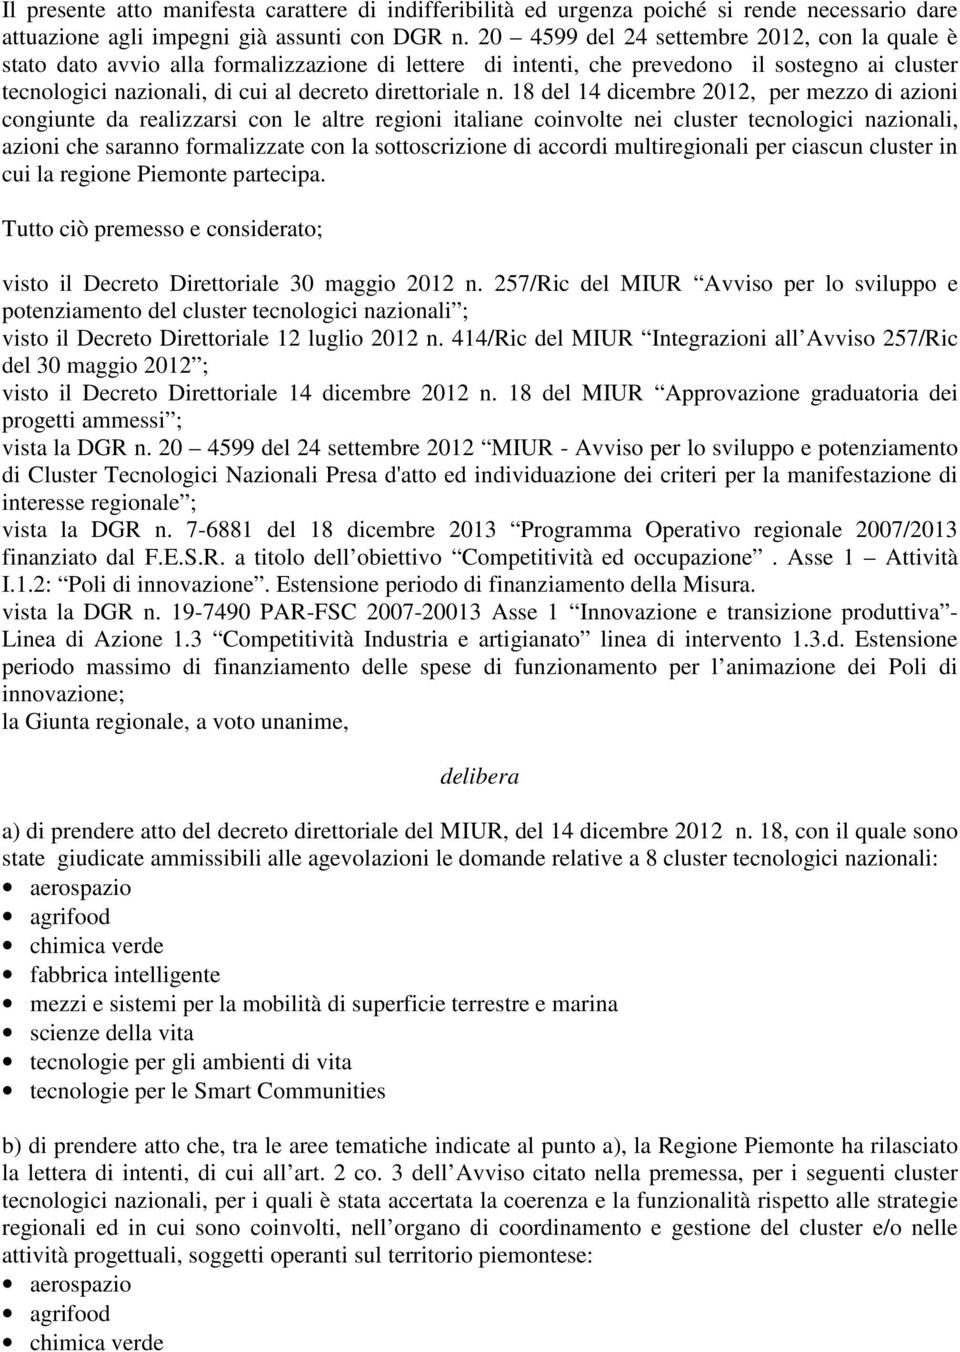 18 del 14 dicembre 2012, per mezzo di azioni congiunte da realizzarsi con le altre regioni italiane coinvolte nei cluster tecnologici nazionali, azioni che saranno formalizzate con la sottoscrizione